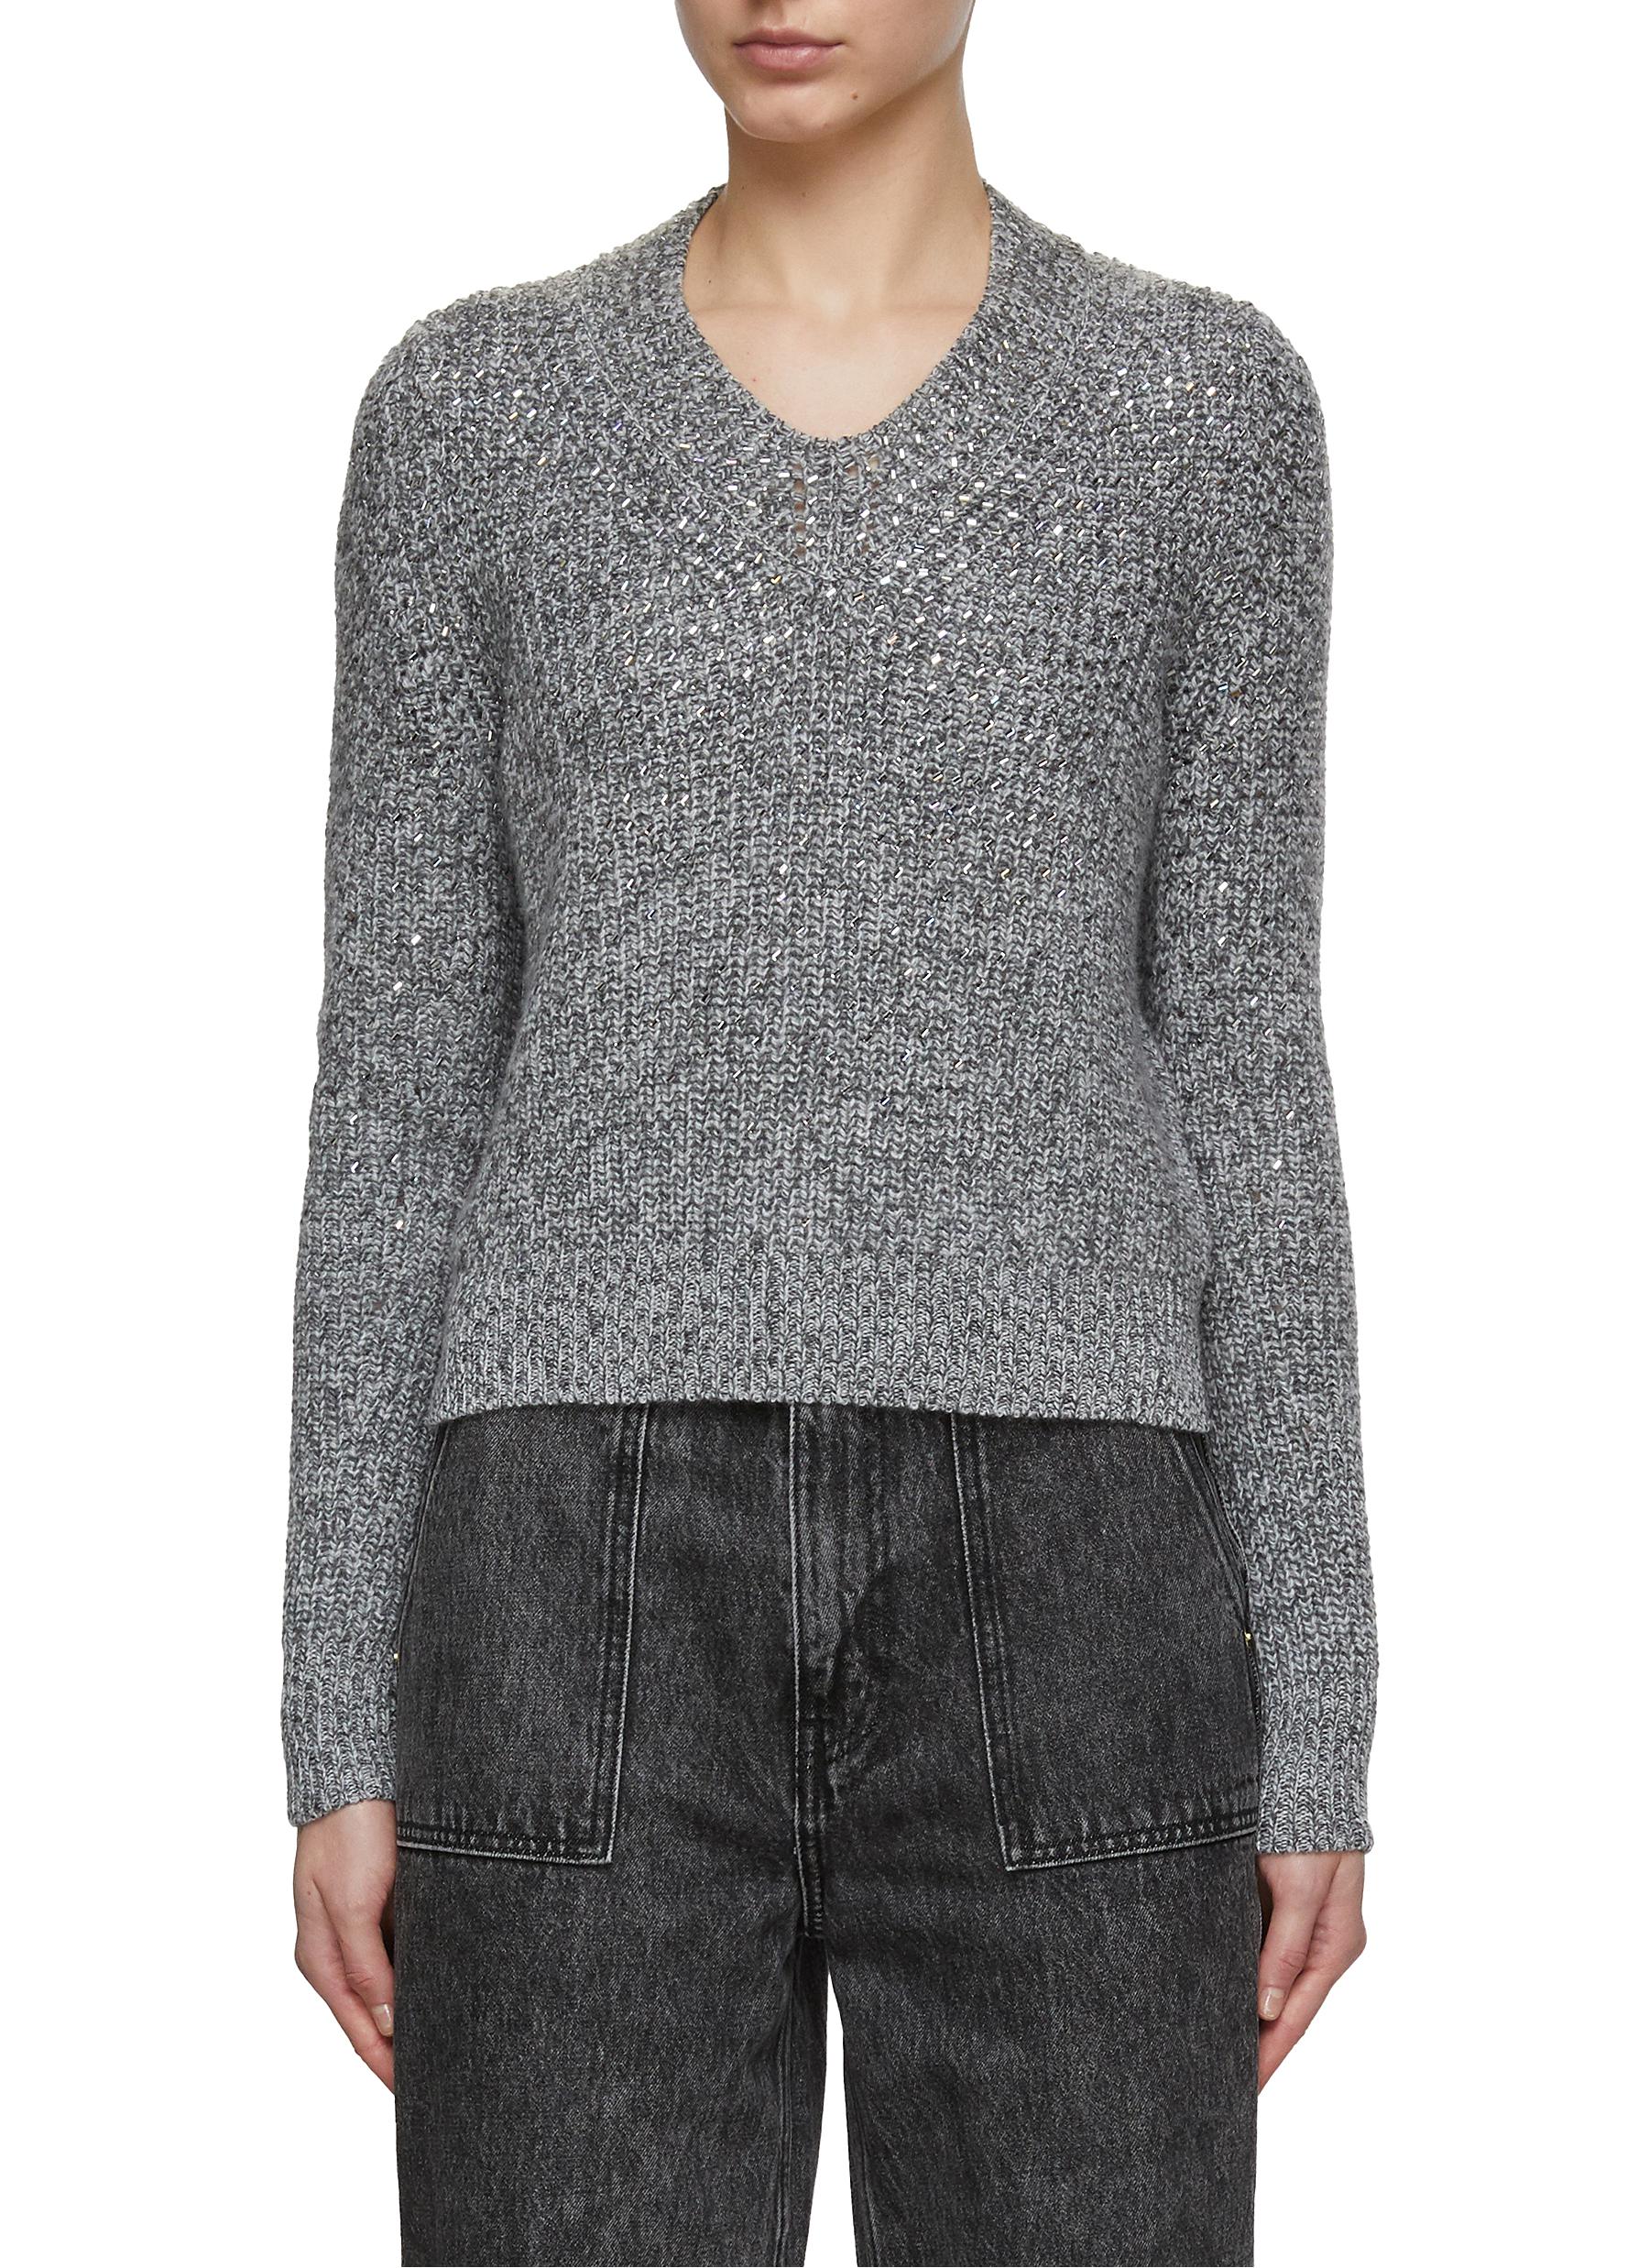 ERMANNO SCERVINO | Hotfix Embellished Mélange Sweater | Women